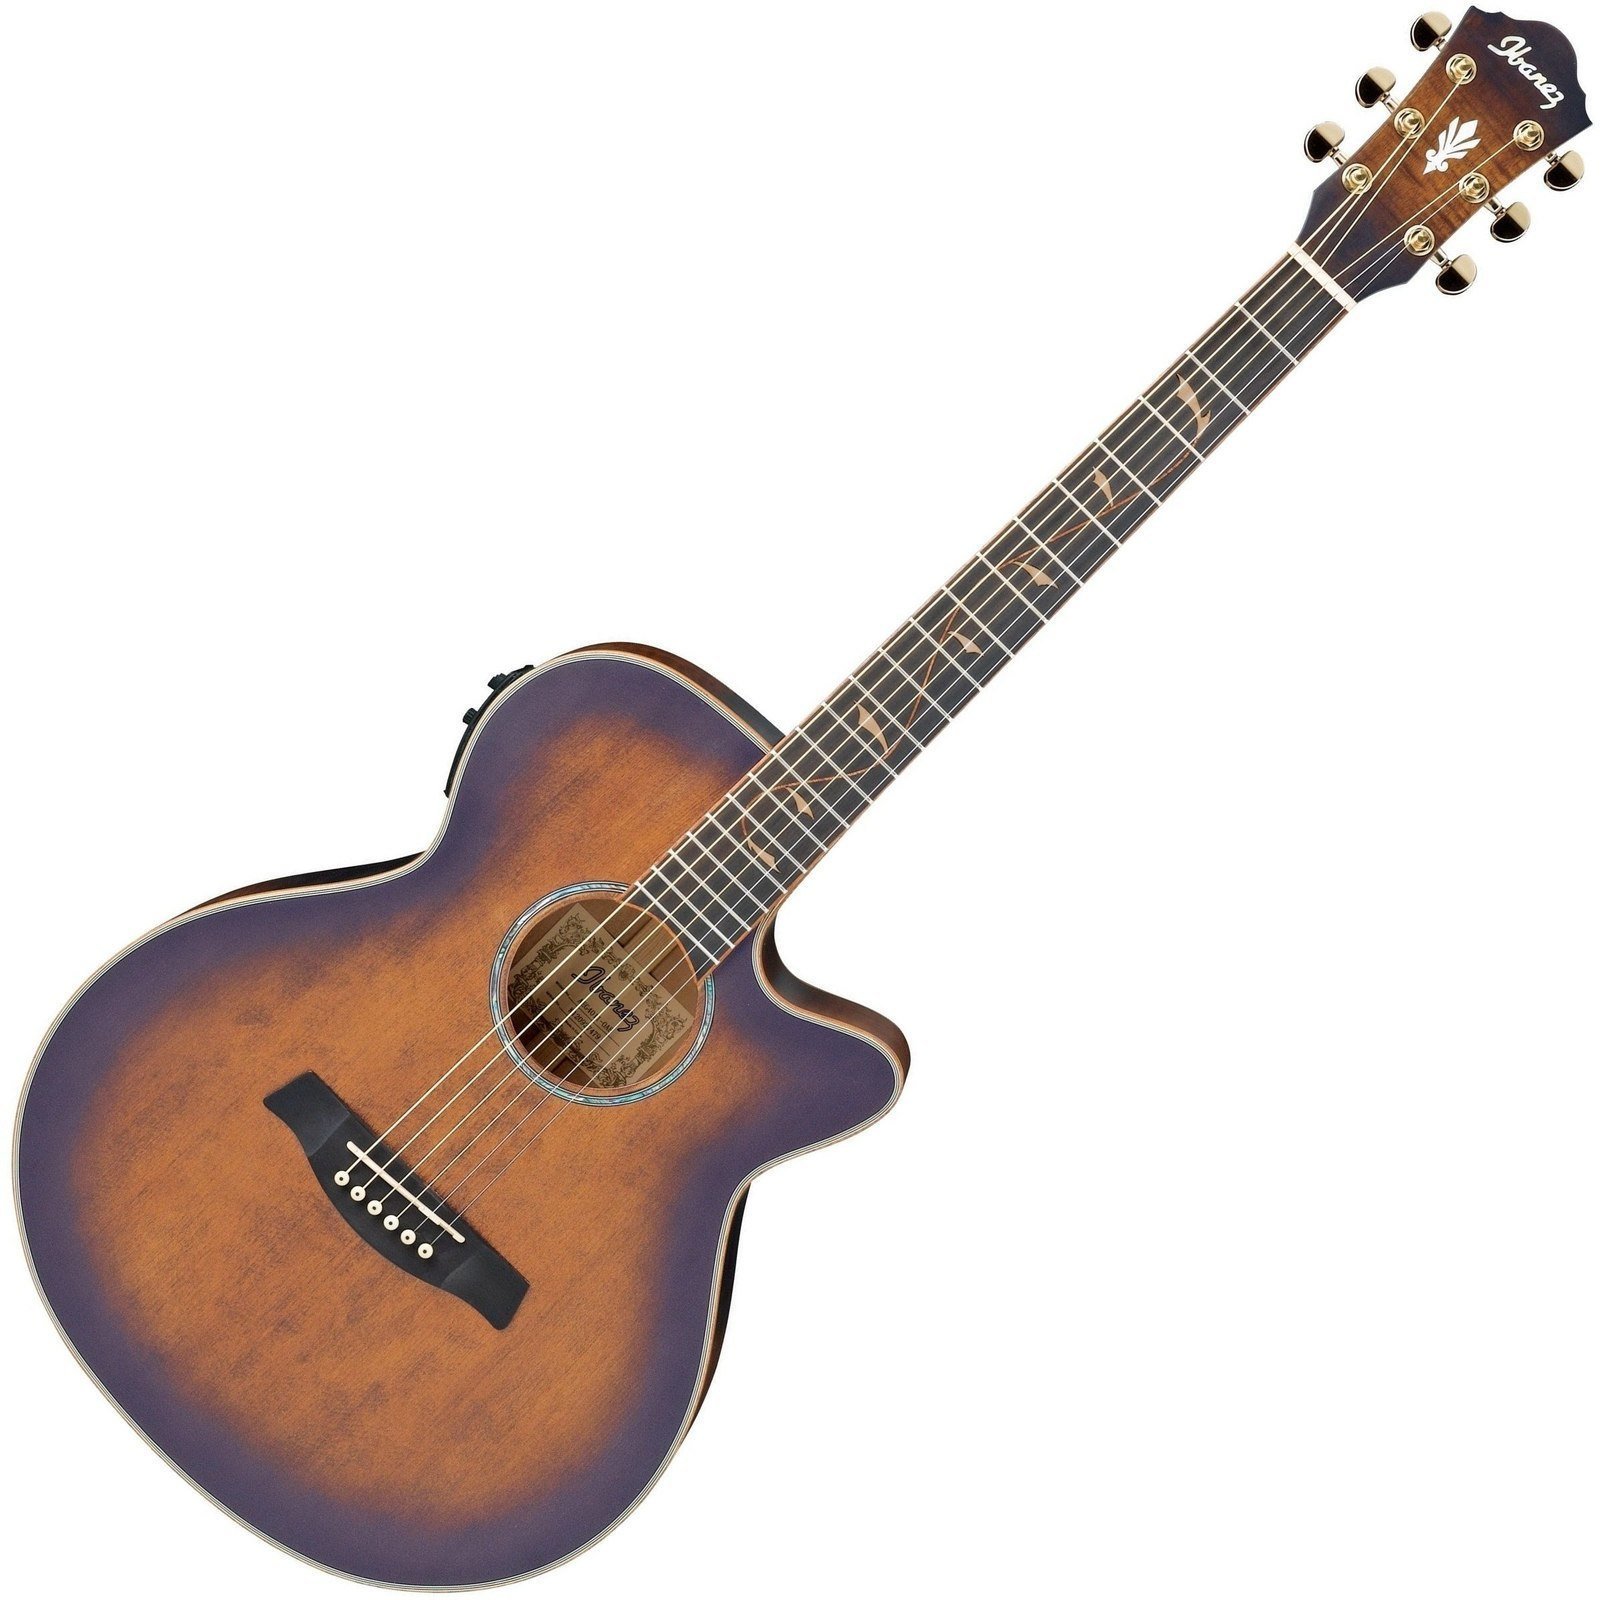 Jumbo elektro-akoestische gitaar Ibanez AEG 40II Open Pore Antique Brown Sunburst